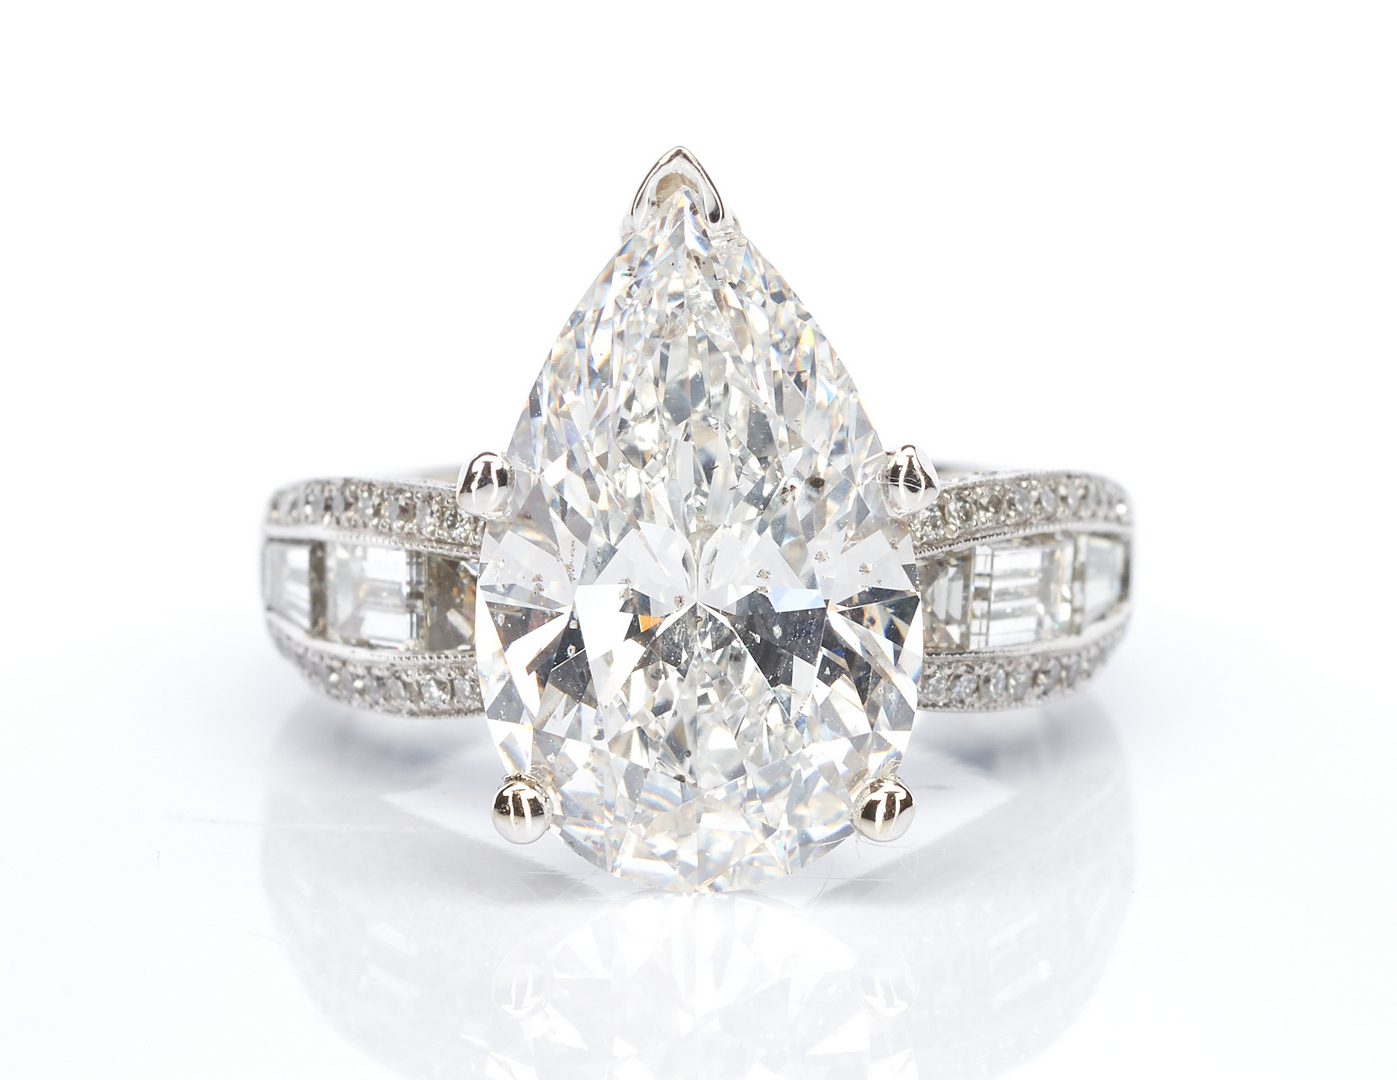 Lot 32: Ladies Platinum & 6 Carat Diamond Engagement Ring